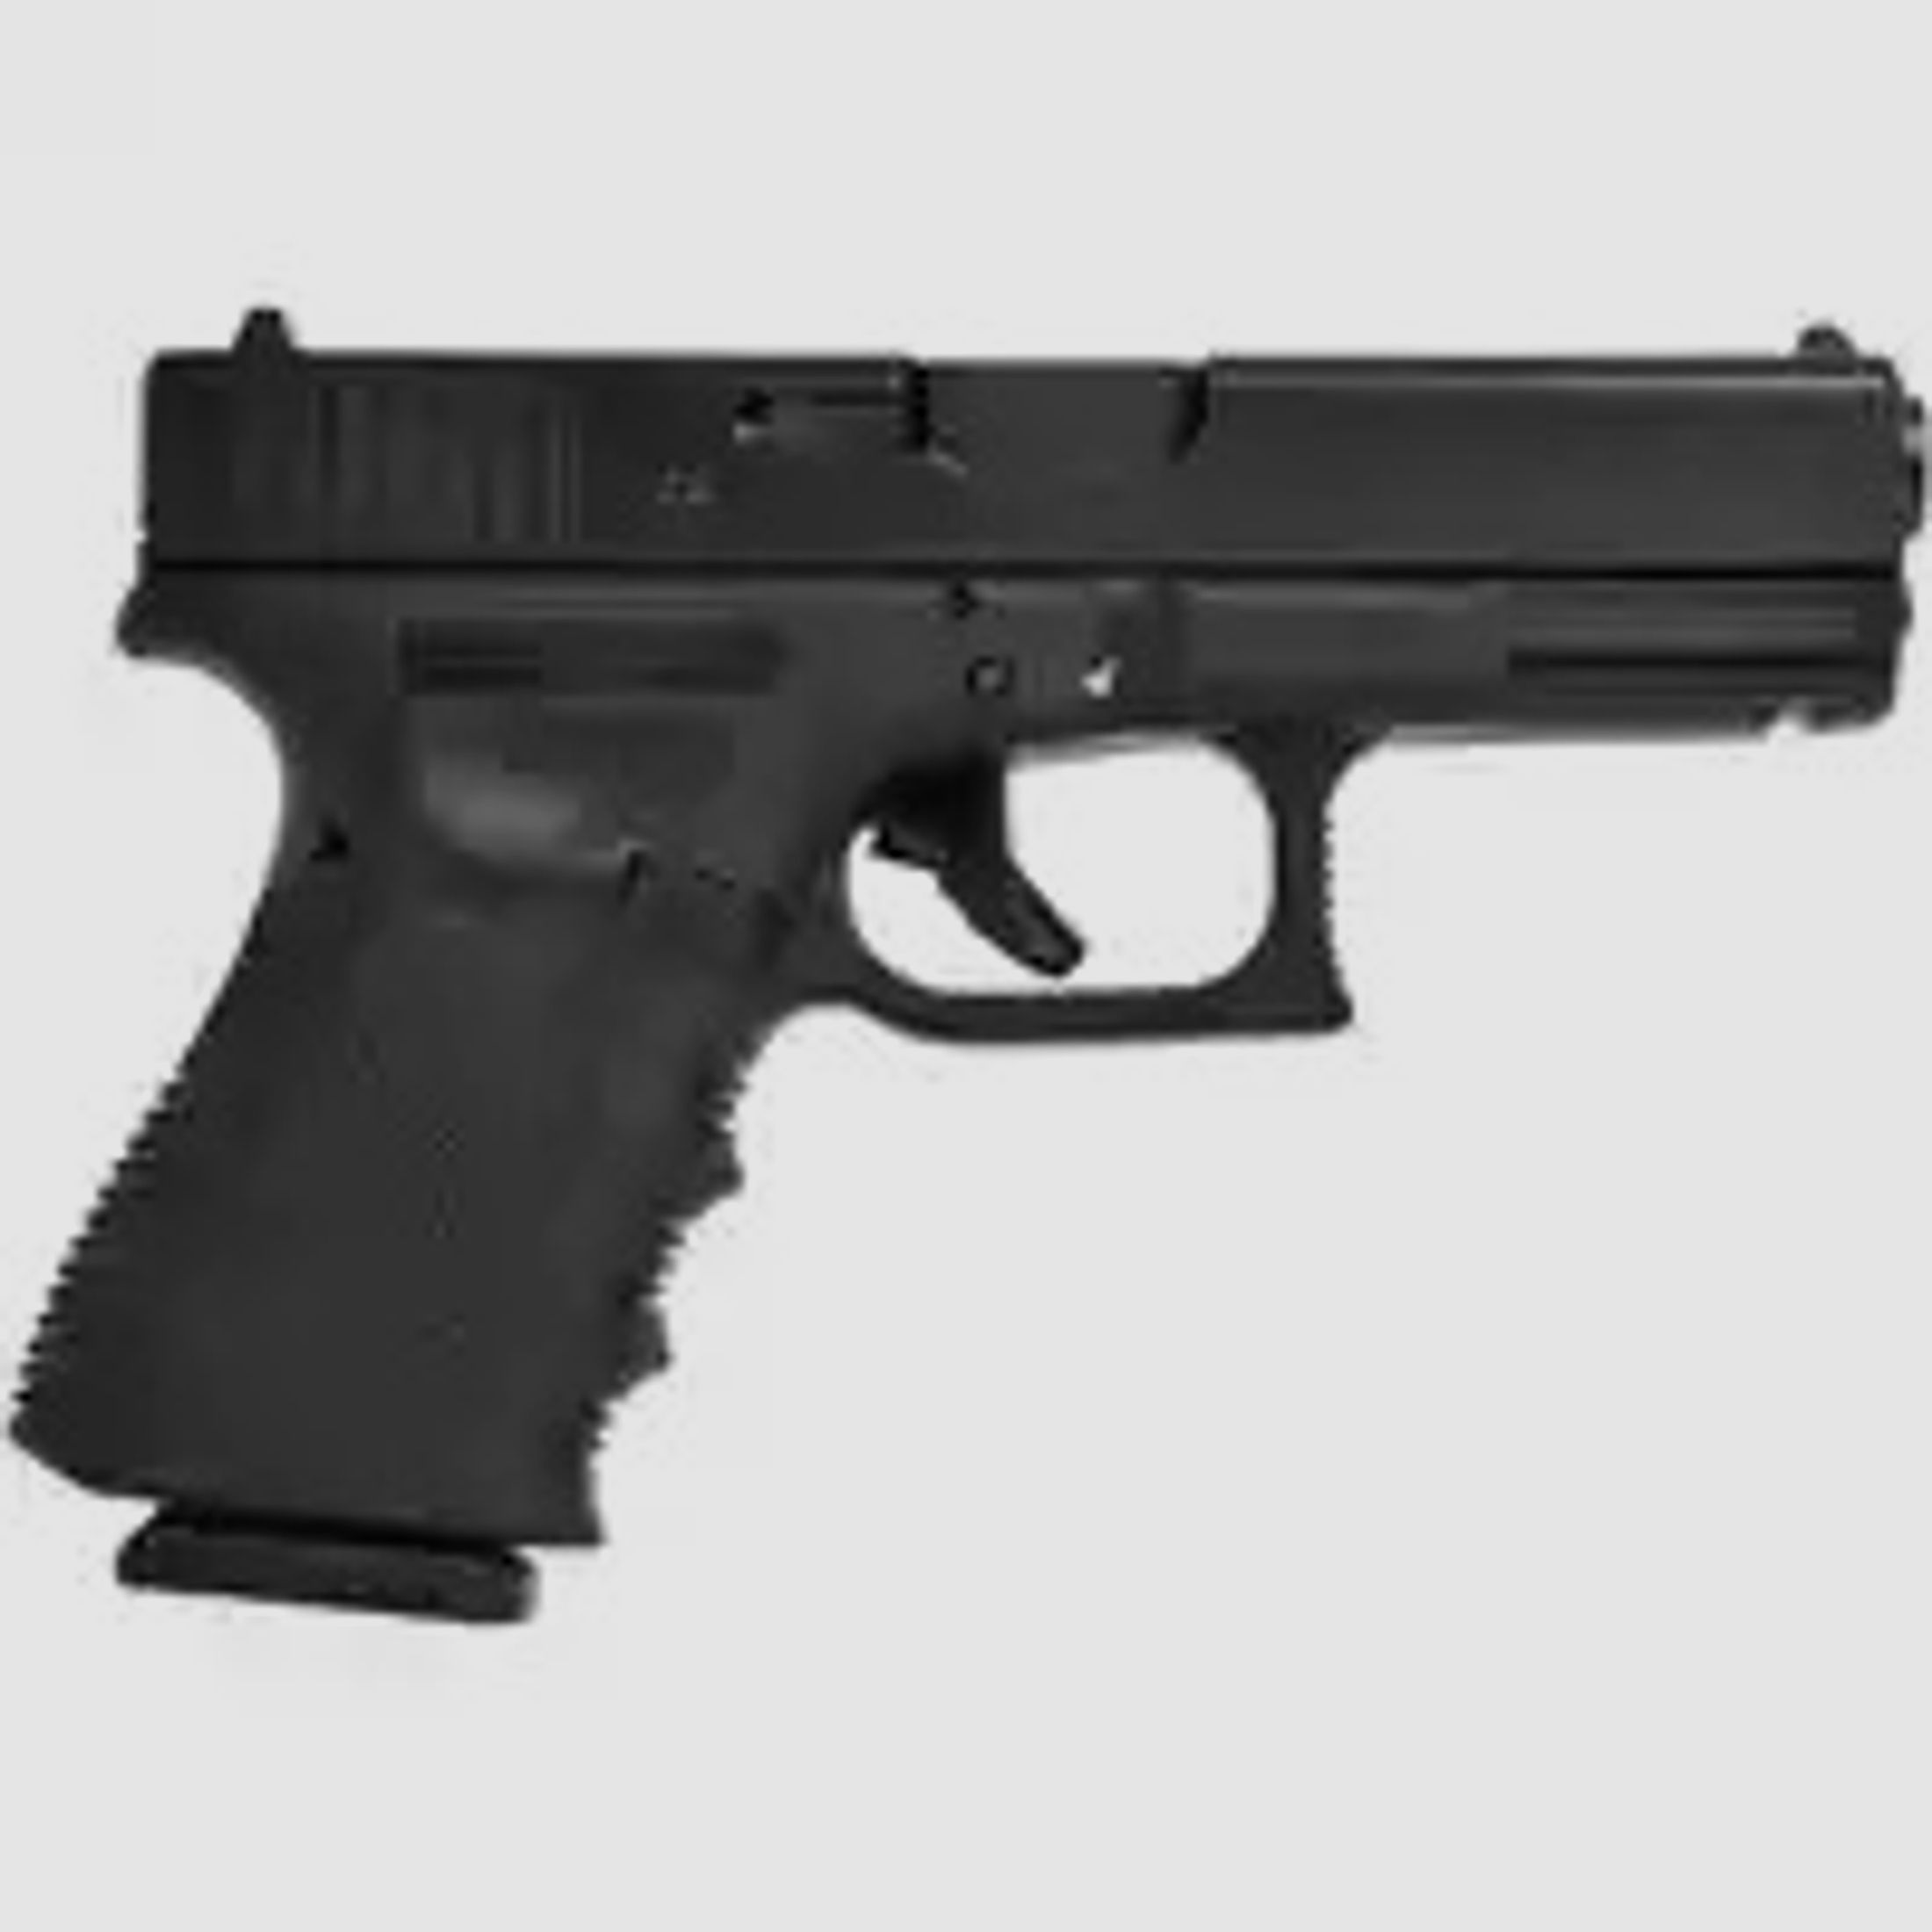 Pistole Glock 19 Kaliber: 9mm Luger